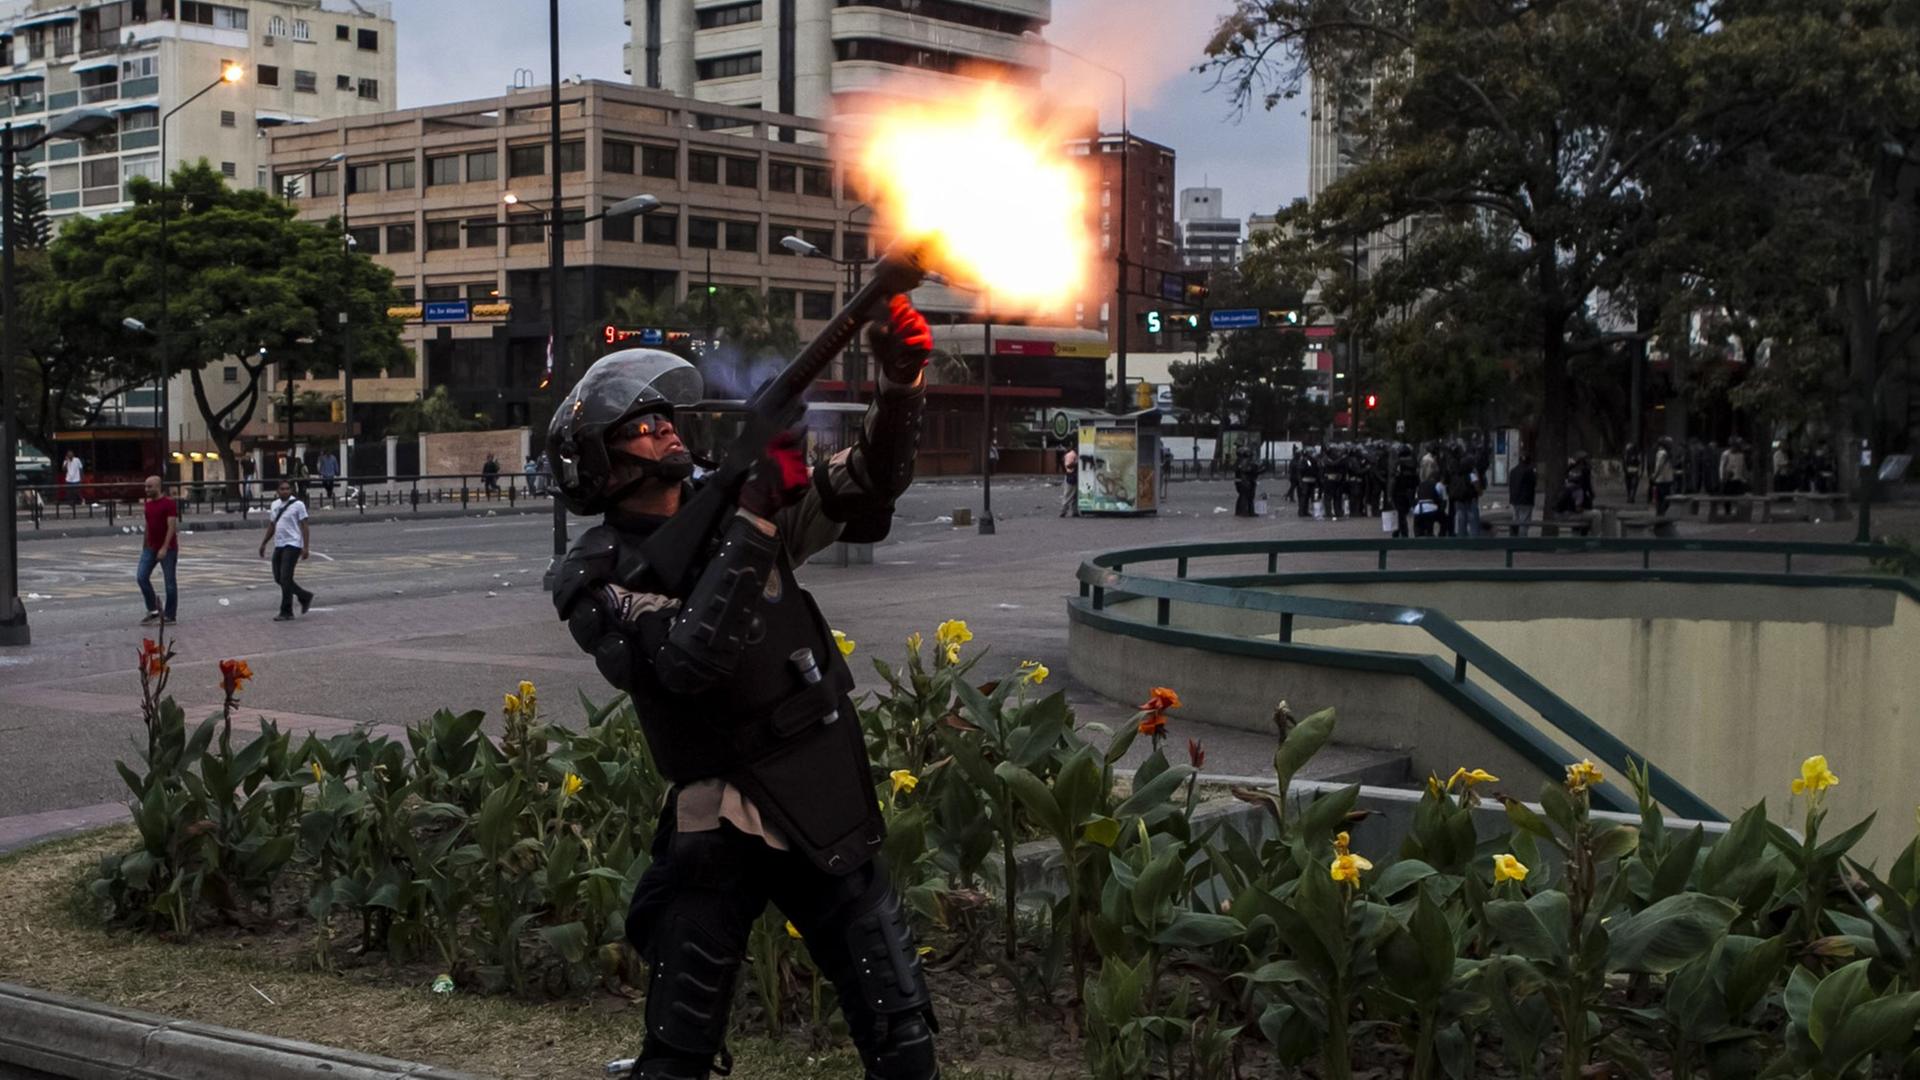 Ein Mitglied der venezolanischen Nationalpolizei schießt einen Tränengaskanister mit einem Gewehr ab, um regierungskritische Demonstranten zu vertreiben, aufgenommen 2014.